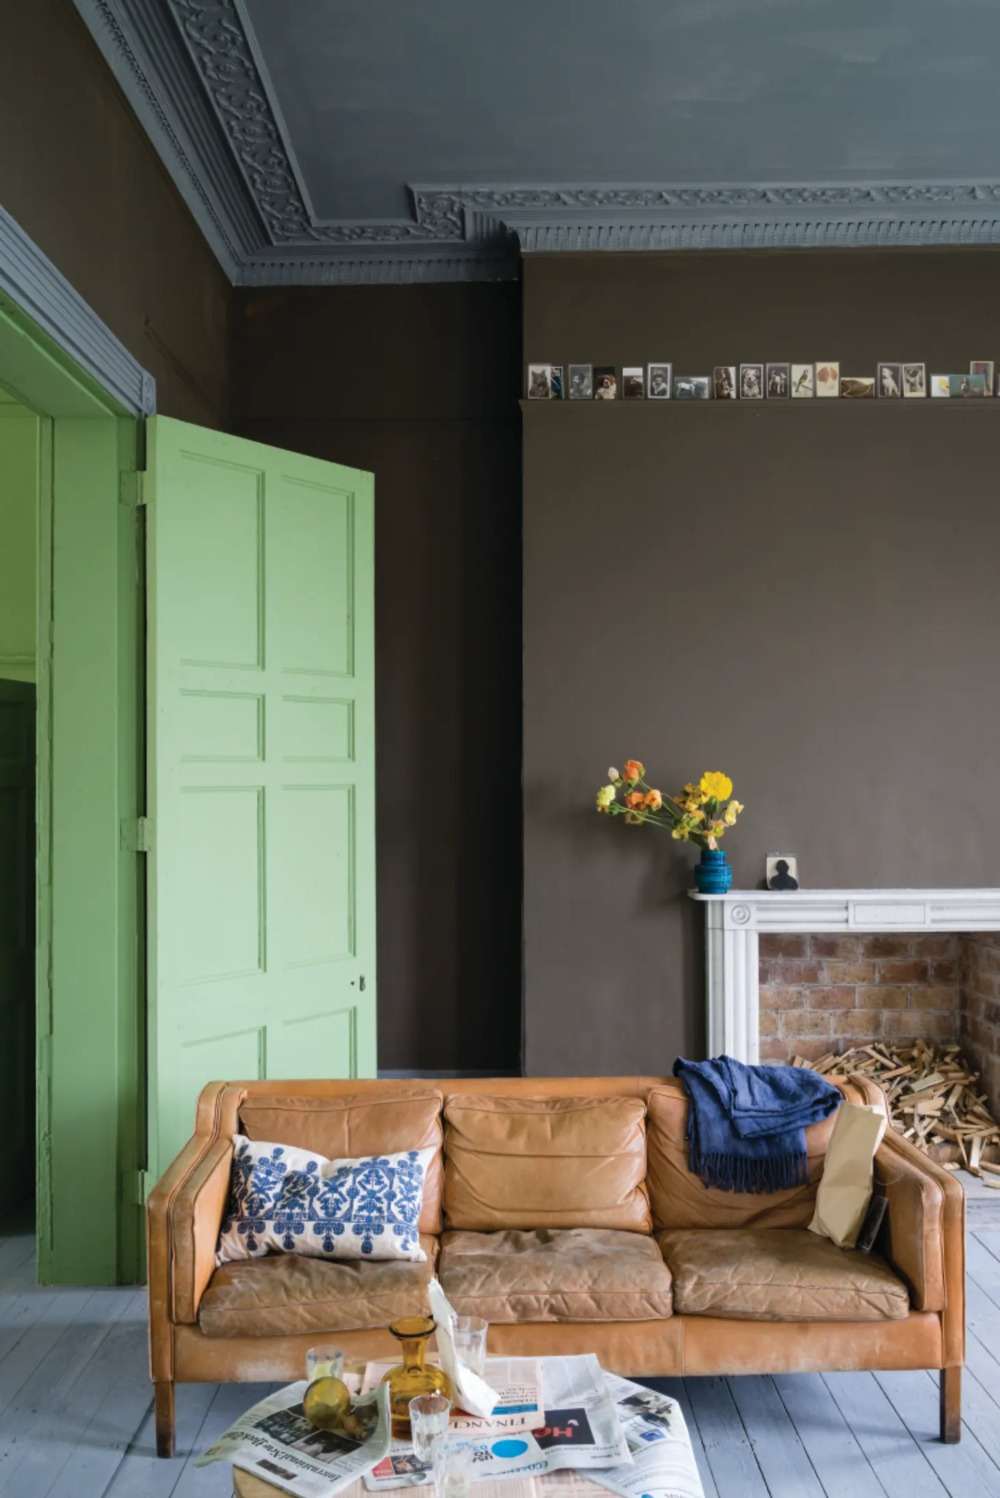 rustikale innentüren streichen eggshell matt grün passend zum ledercouch im wohnzimmer